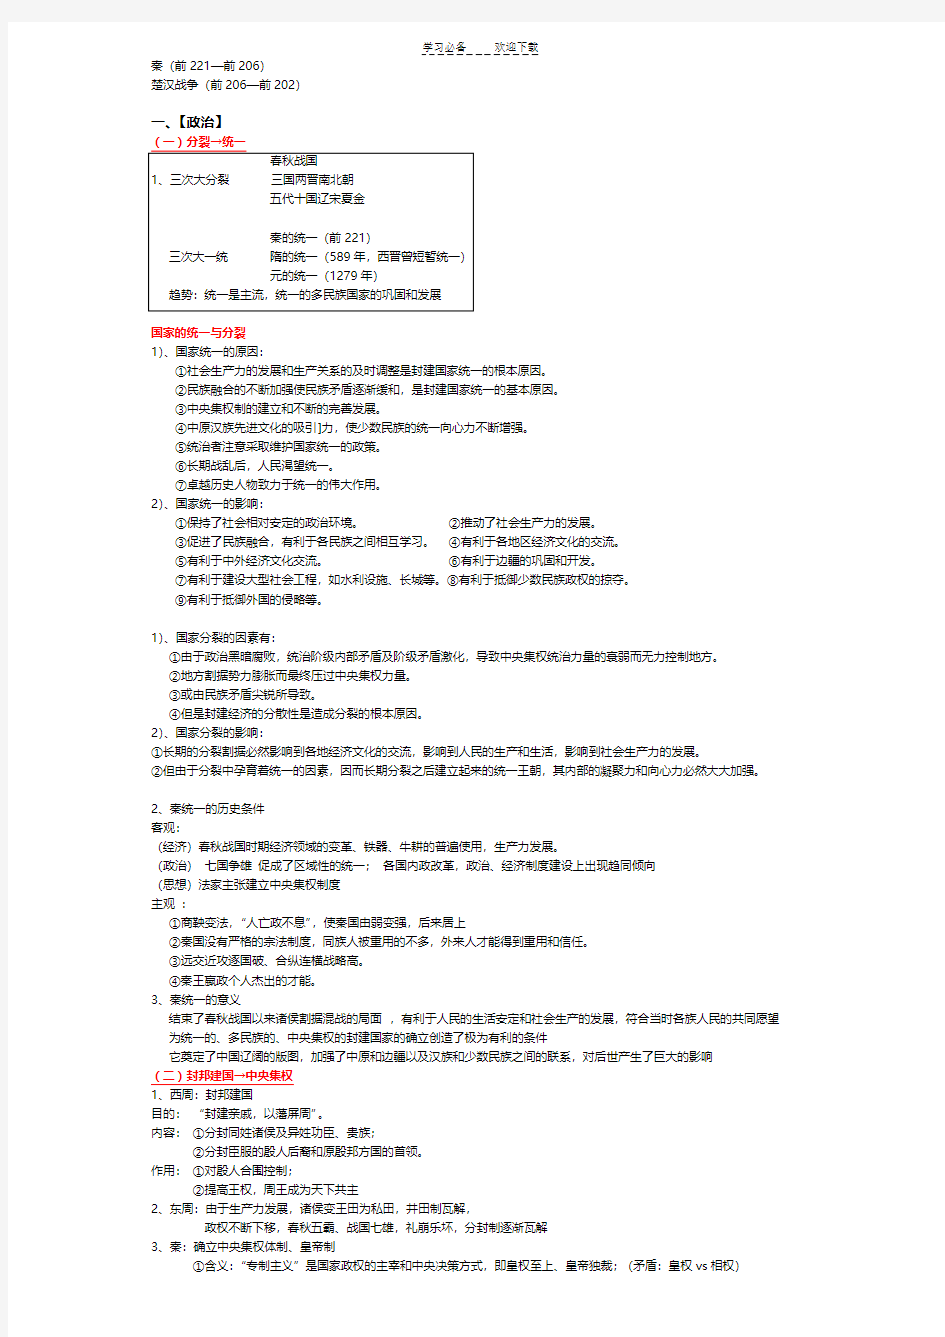 上海高考历史复习笔记整理 【中国古代史整理】(详细版)